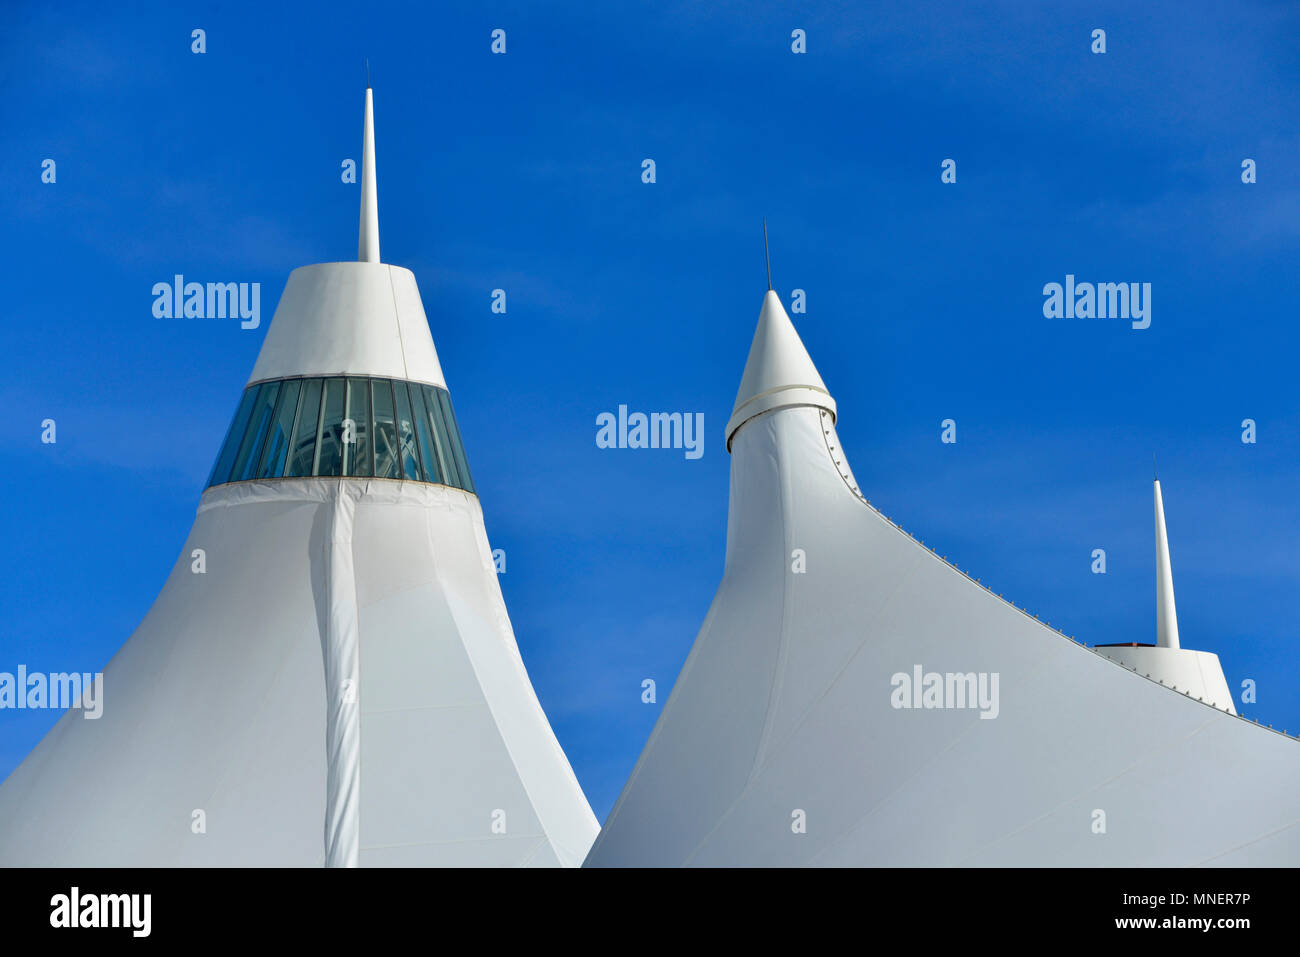 L'Aéroport International de Denver's Terminal Jeppesen, montrant les sommets des "structures de la tente' toit en toile tendue, Denver, Colorado, USA Banque D'Images